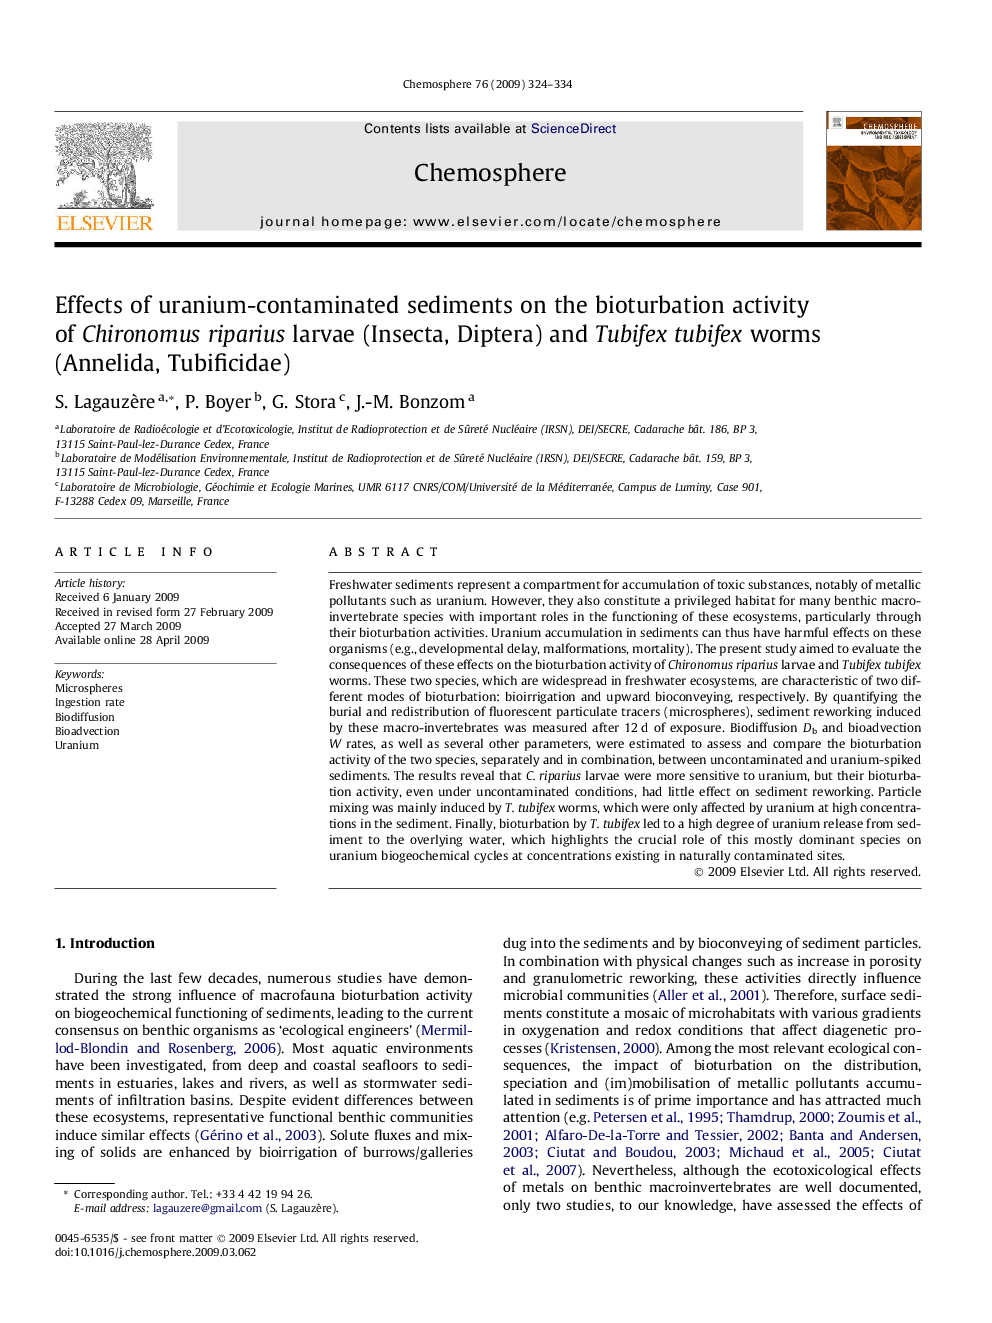 Effects of uranium-contaminated sediments on the bioturbation activity of Chironomus riparius larvae (Insecta, Diptera) and Tubifex tubifex worms (Annelida, Tubificidae)